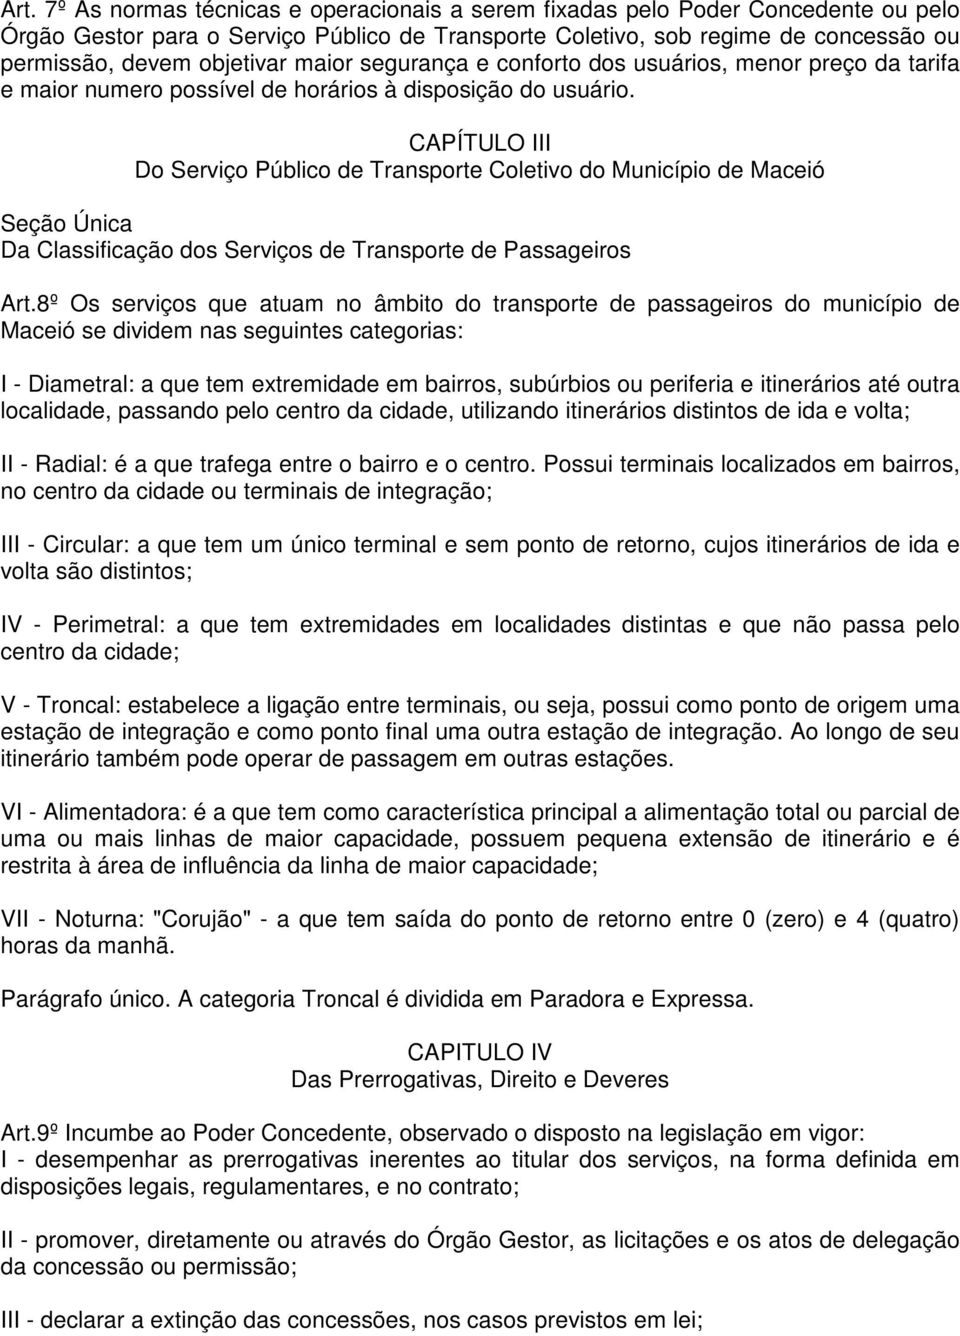 CAPÍTULO III Do Serviço Público de Transporte Coletivo do Município de Maceió Seção Única Da Classificação dos Serviços de Transporte de Passageiros Art.